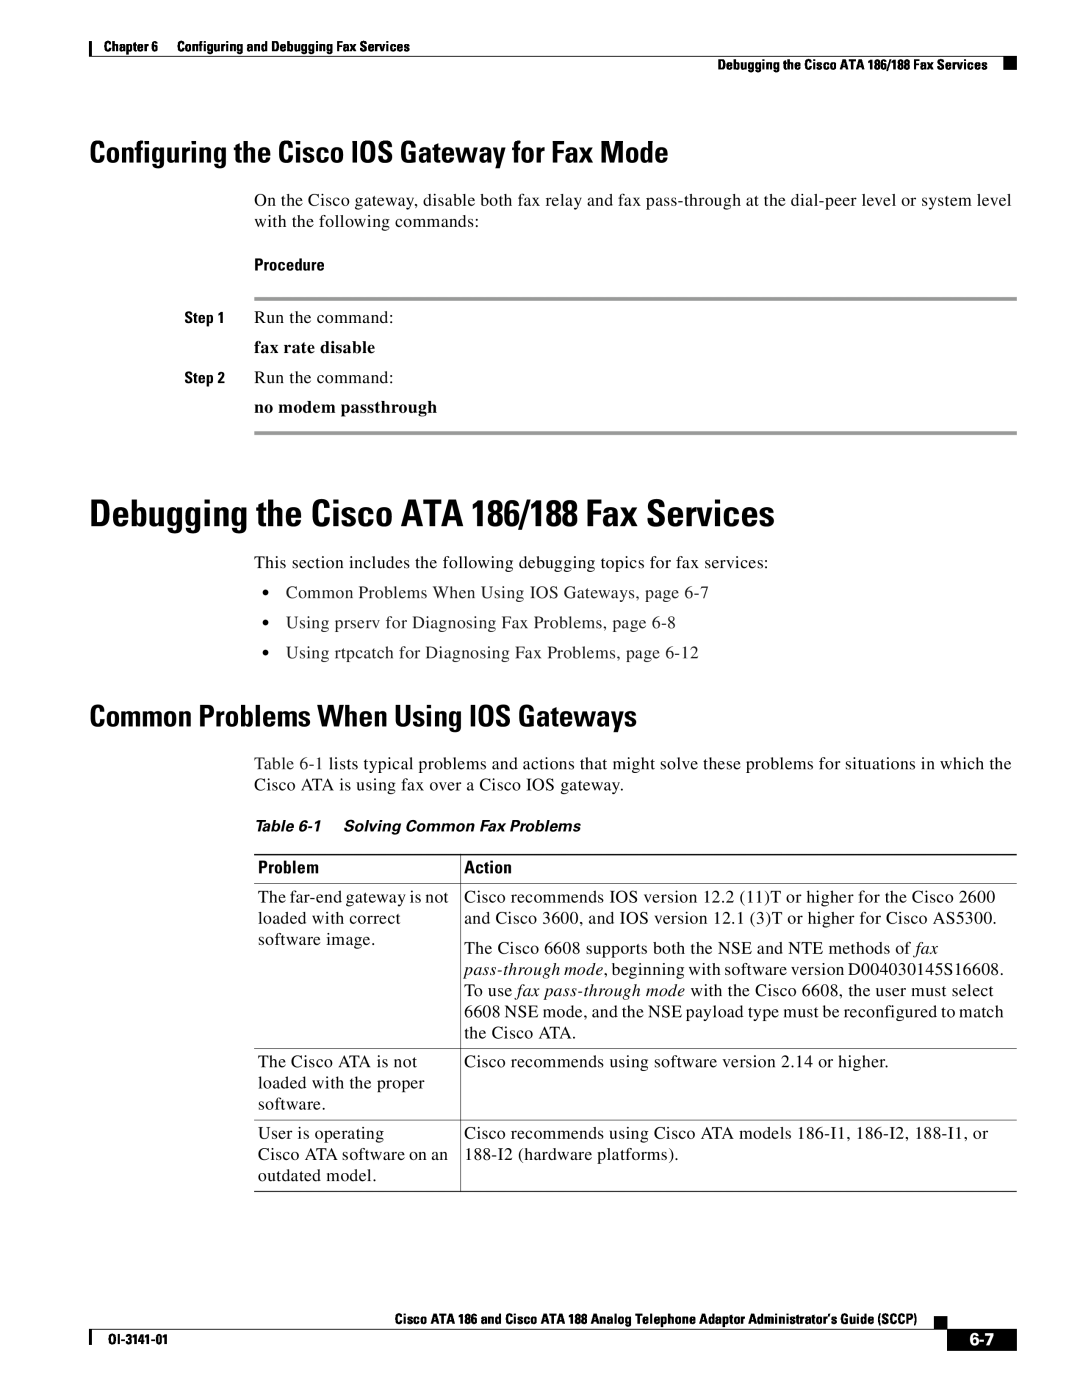 Cisco Systems ATA 188 Debugging the Cisco ATA 186/188 Fax Services, Configuring the Cisco IOS Gateway for Fax Mode, Action 